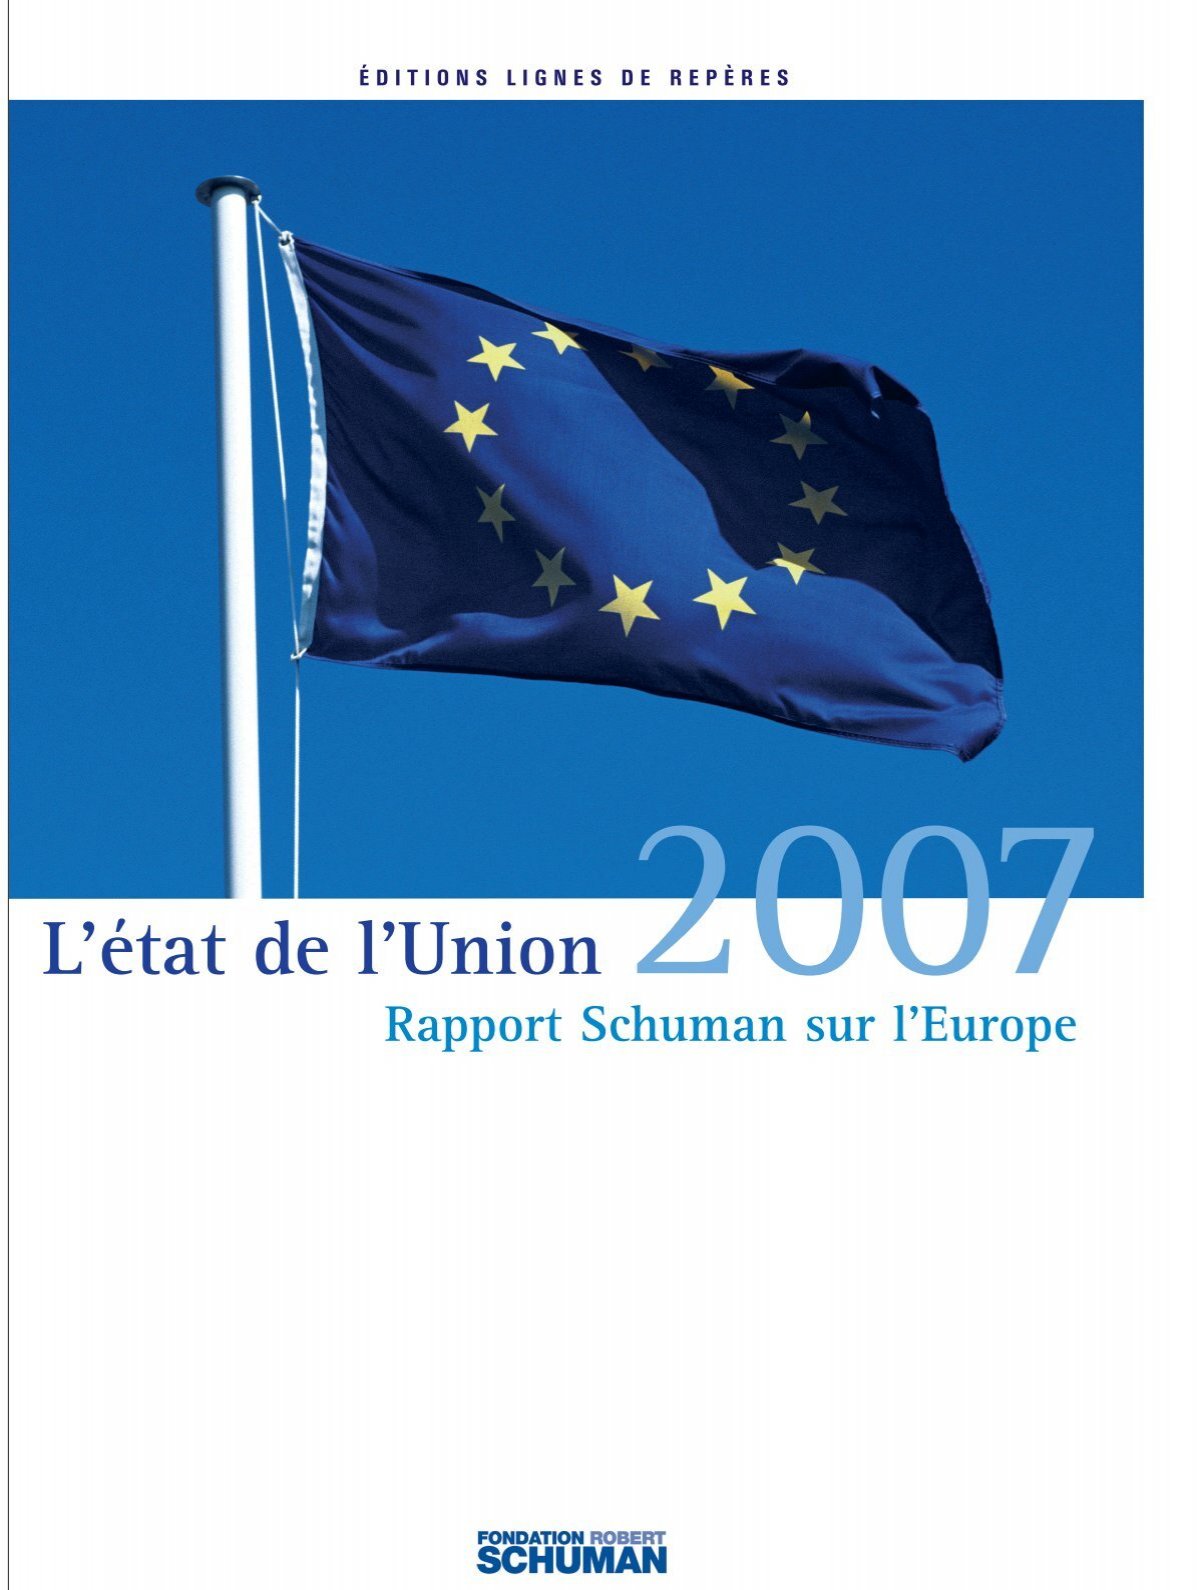 Budget 2007, EADS, GDF : Villepin dans l'impasse - Le Monde